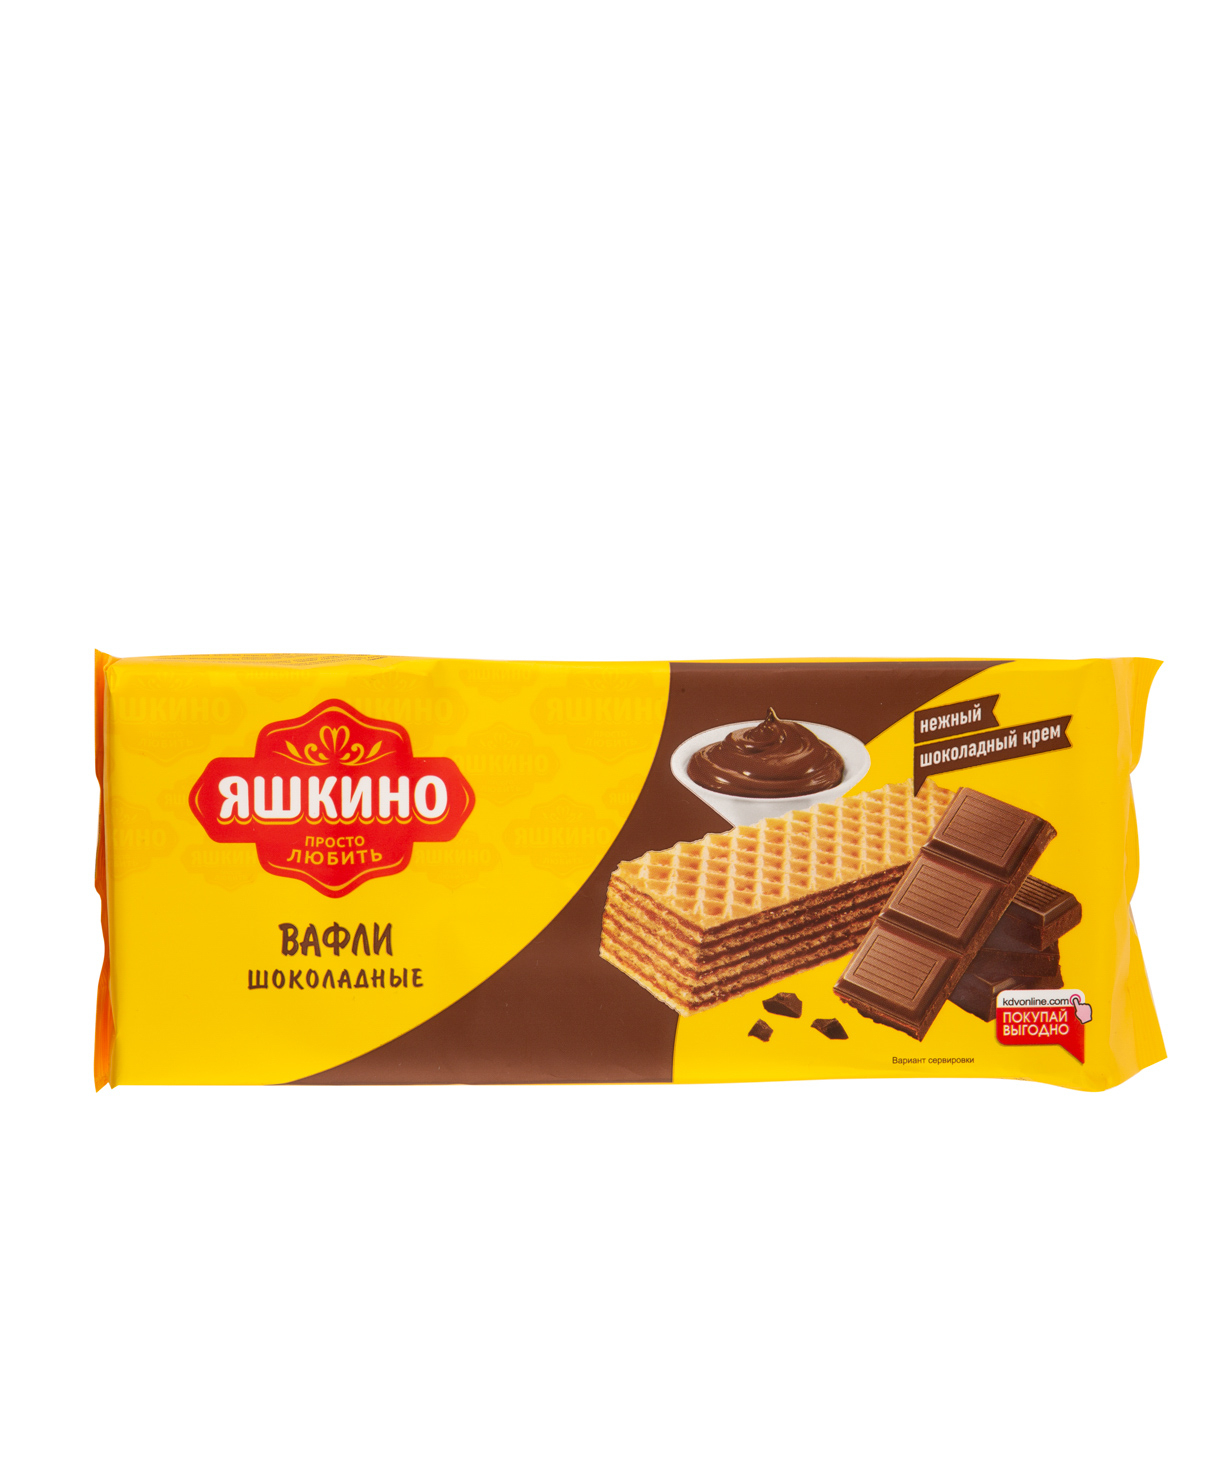 Վաֆլի «Яшкино» շոկոլադե 200գ